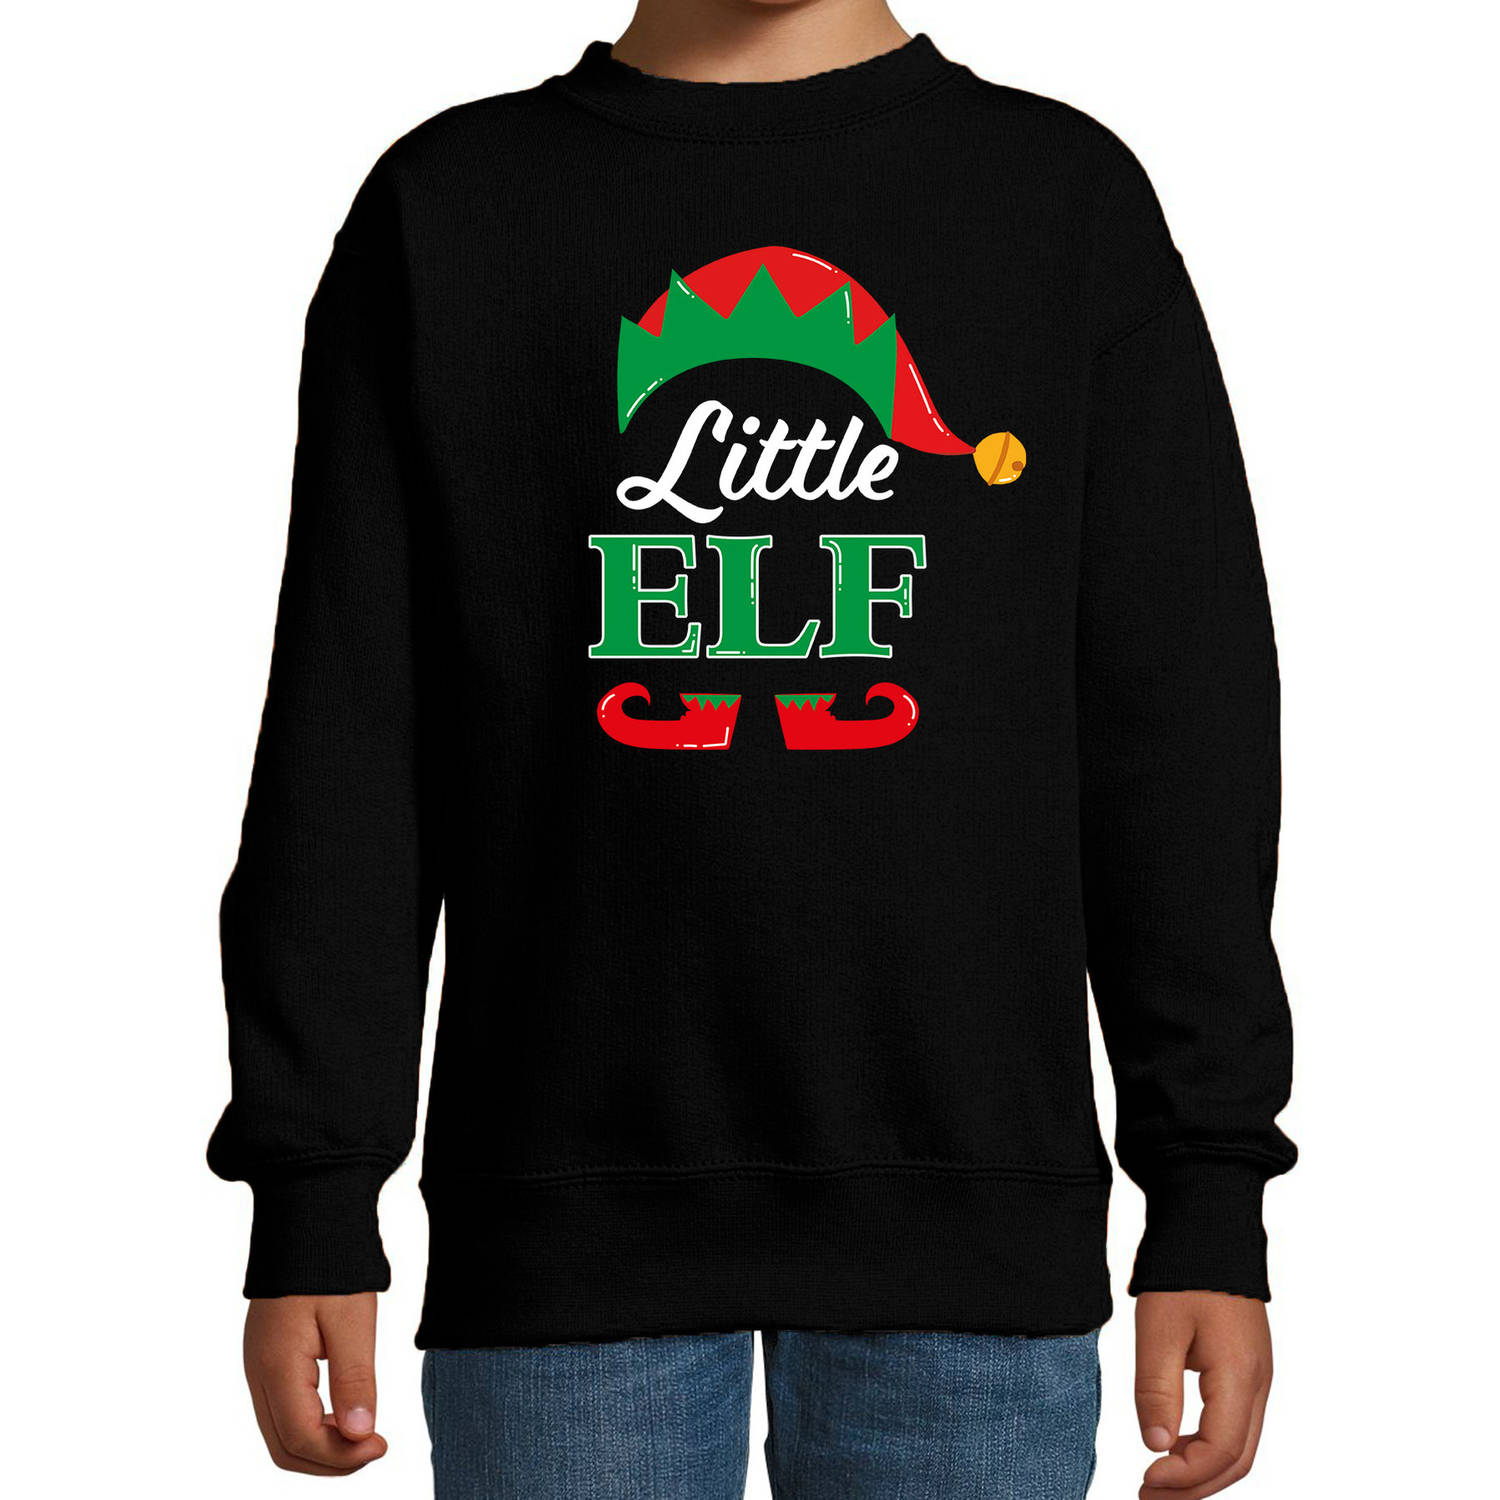 Little elf Kerstsweater / Kersttrui zwart voor kinderen 9-11 jaar (134/146) - kerst truien kind